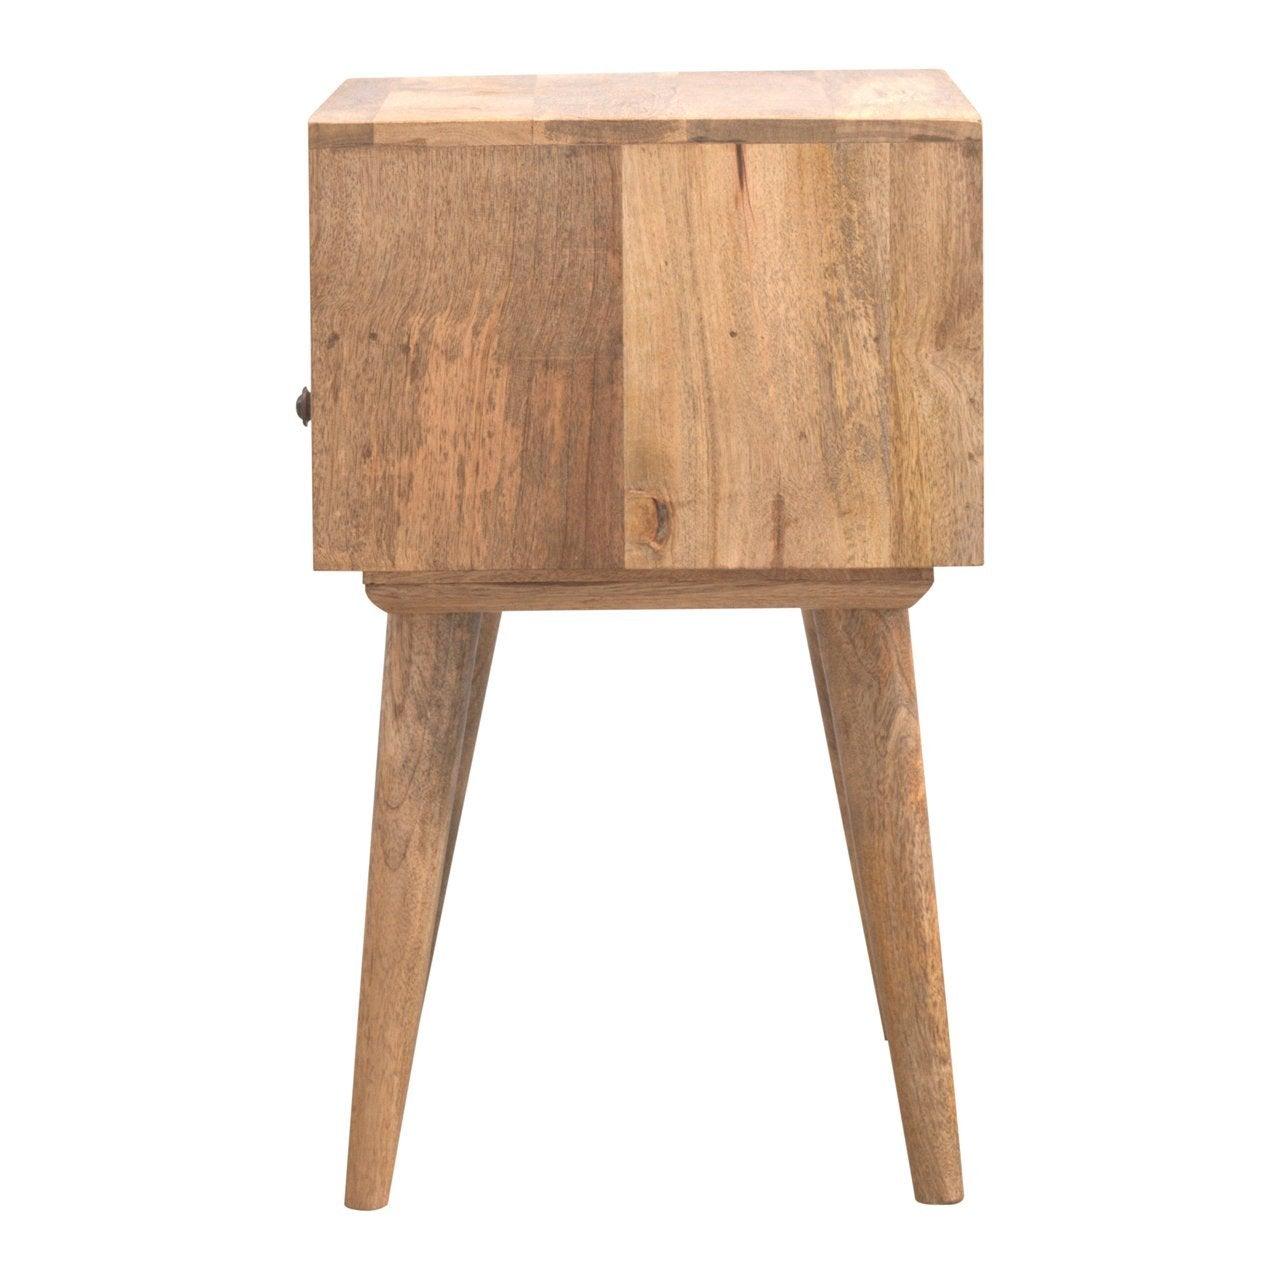 Modern solid wood bedside table with open slot - crimblefest furniture - image 8